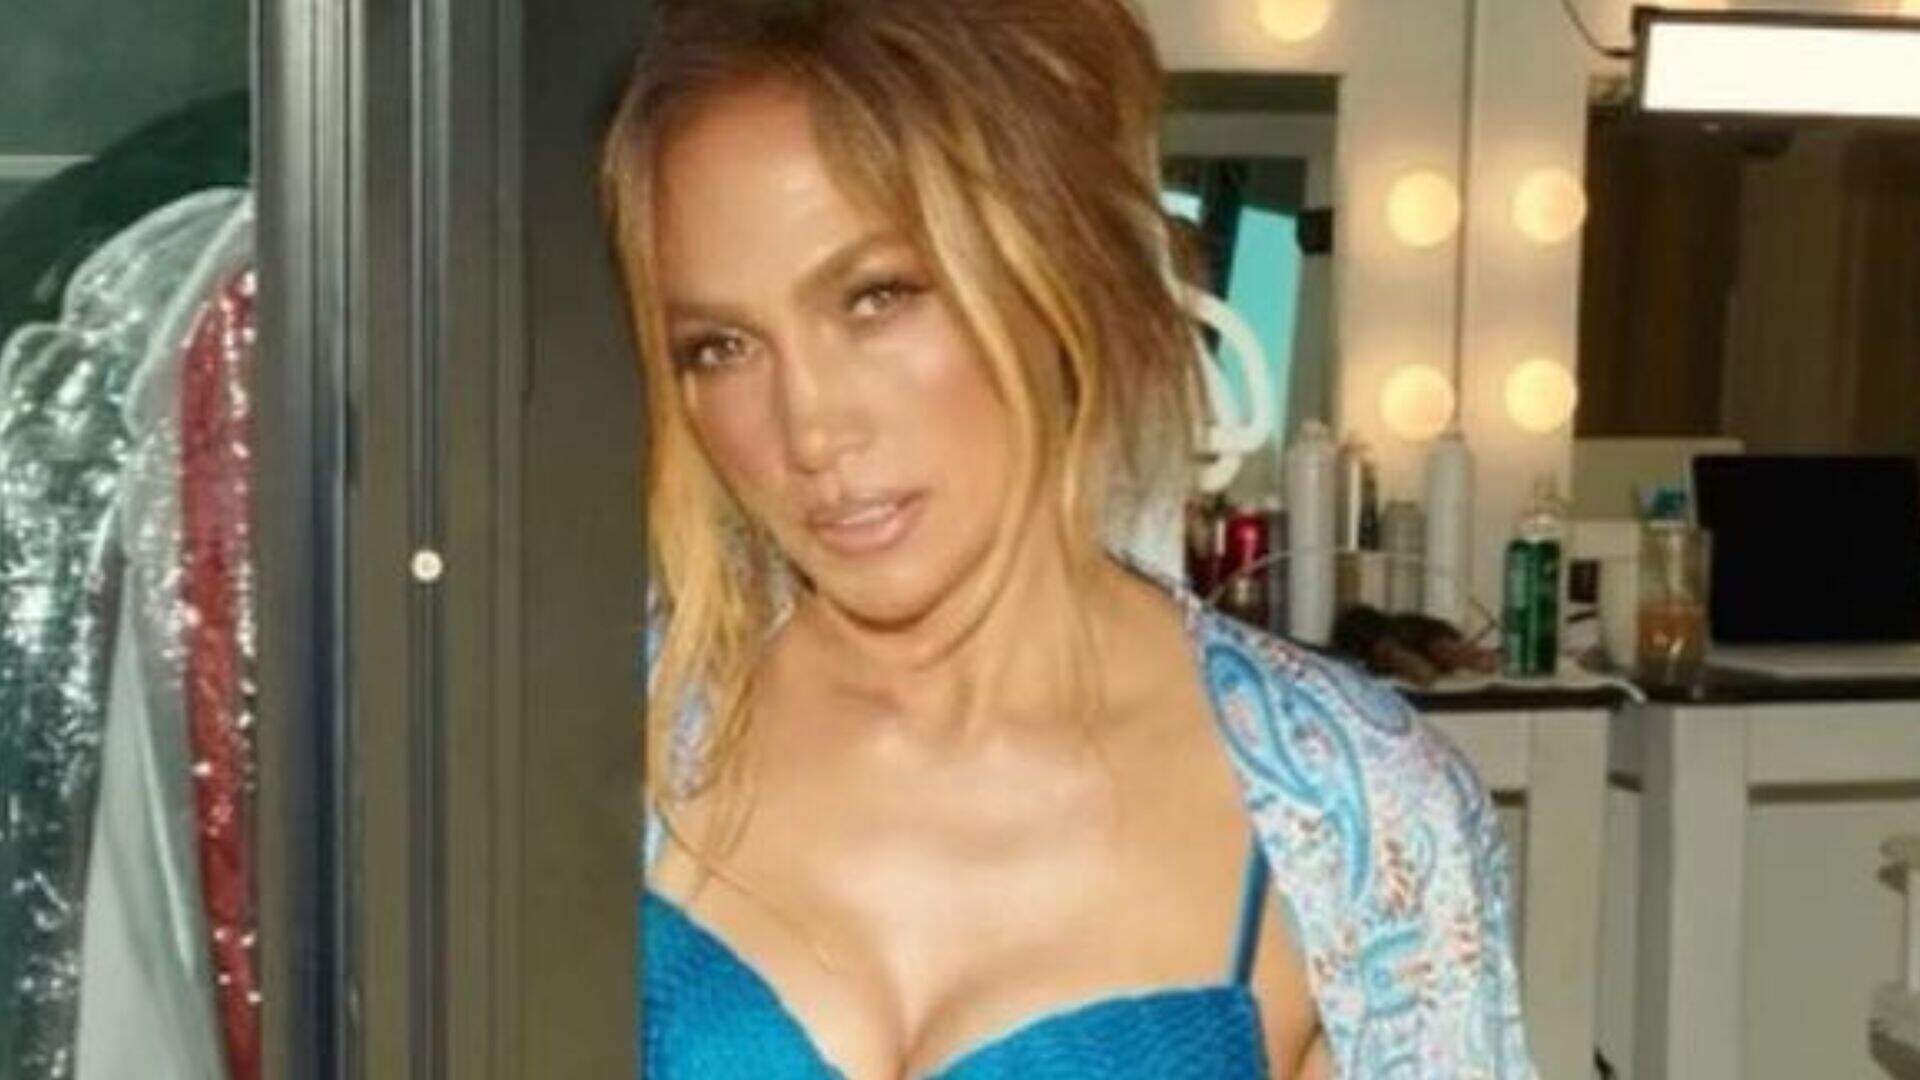 Ao posar de lingerie transparente, Jennifer Lopez sofre de etarismo e se torna alvo de críticas na web - Metropolitana FM